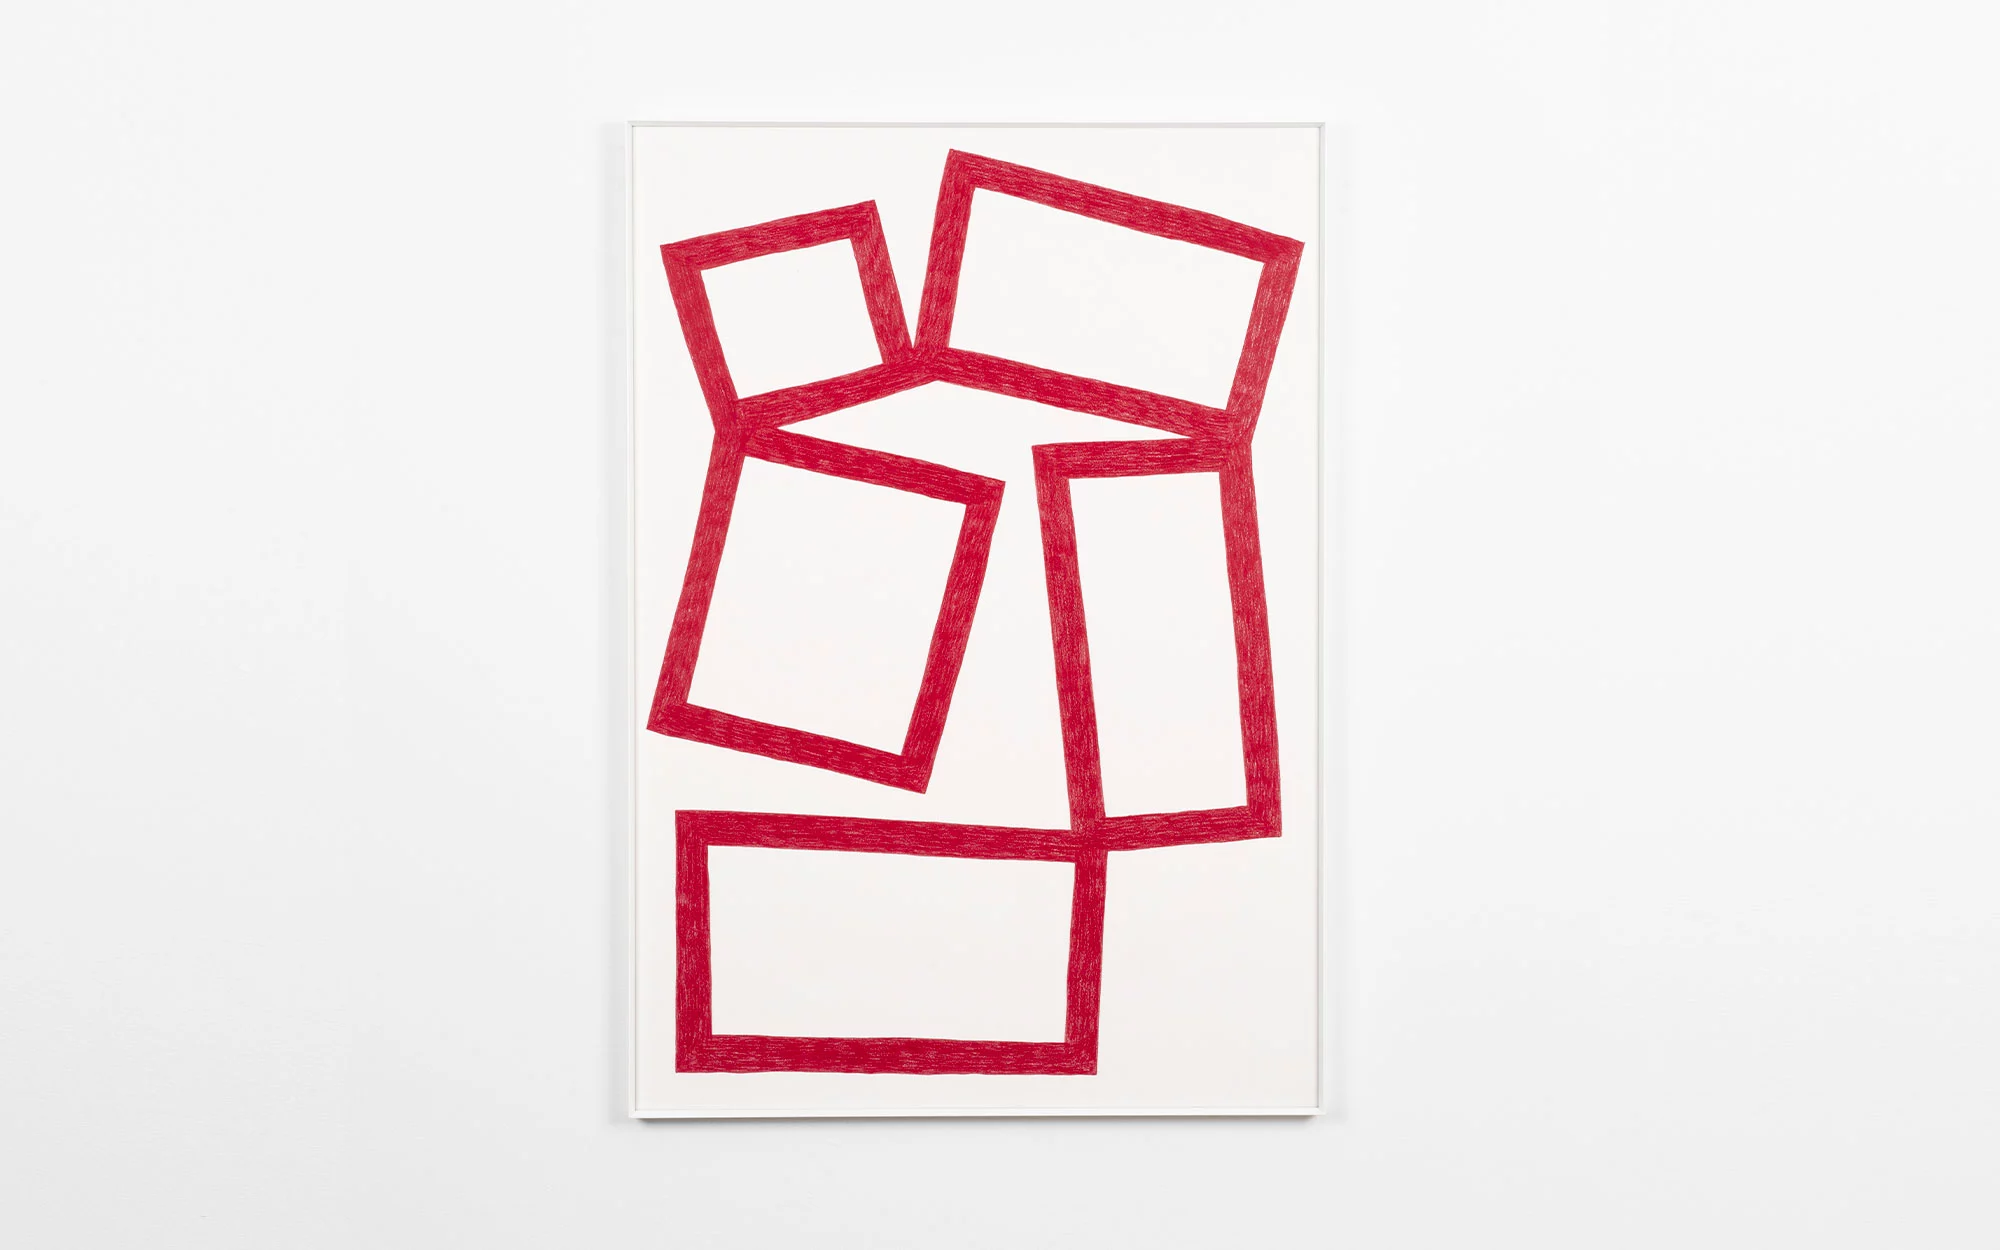 Cubes Drawings - Pierre Charpin - Desk - Galerie kreo